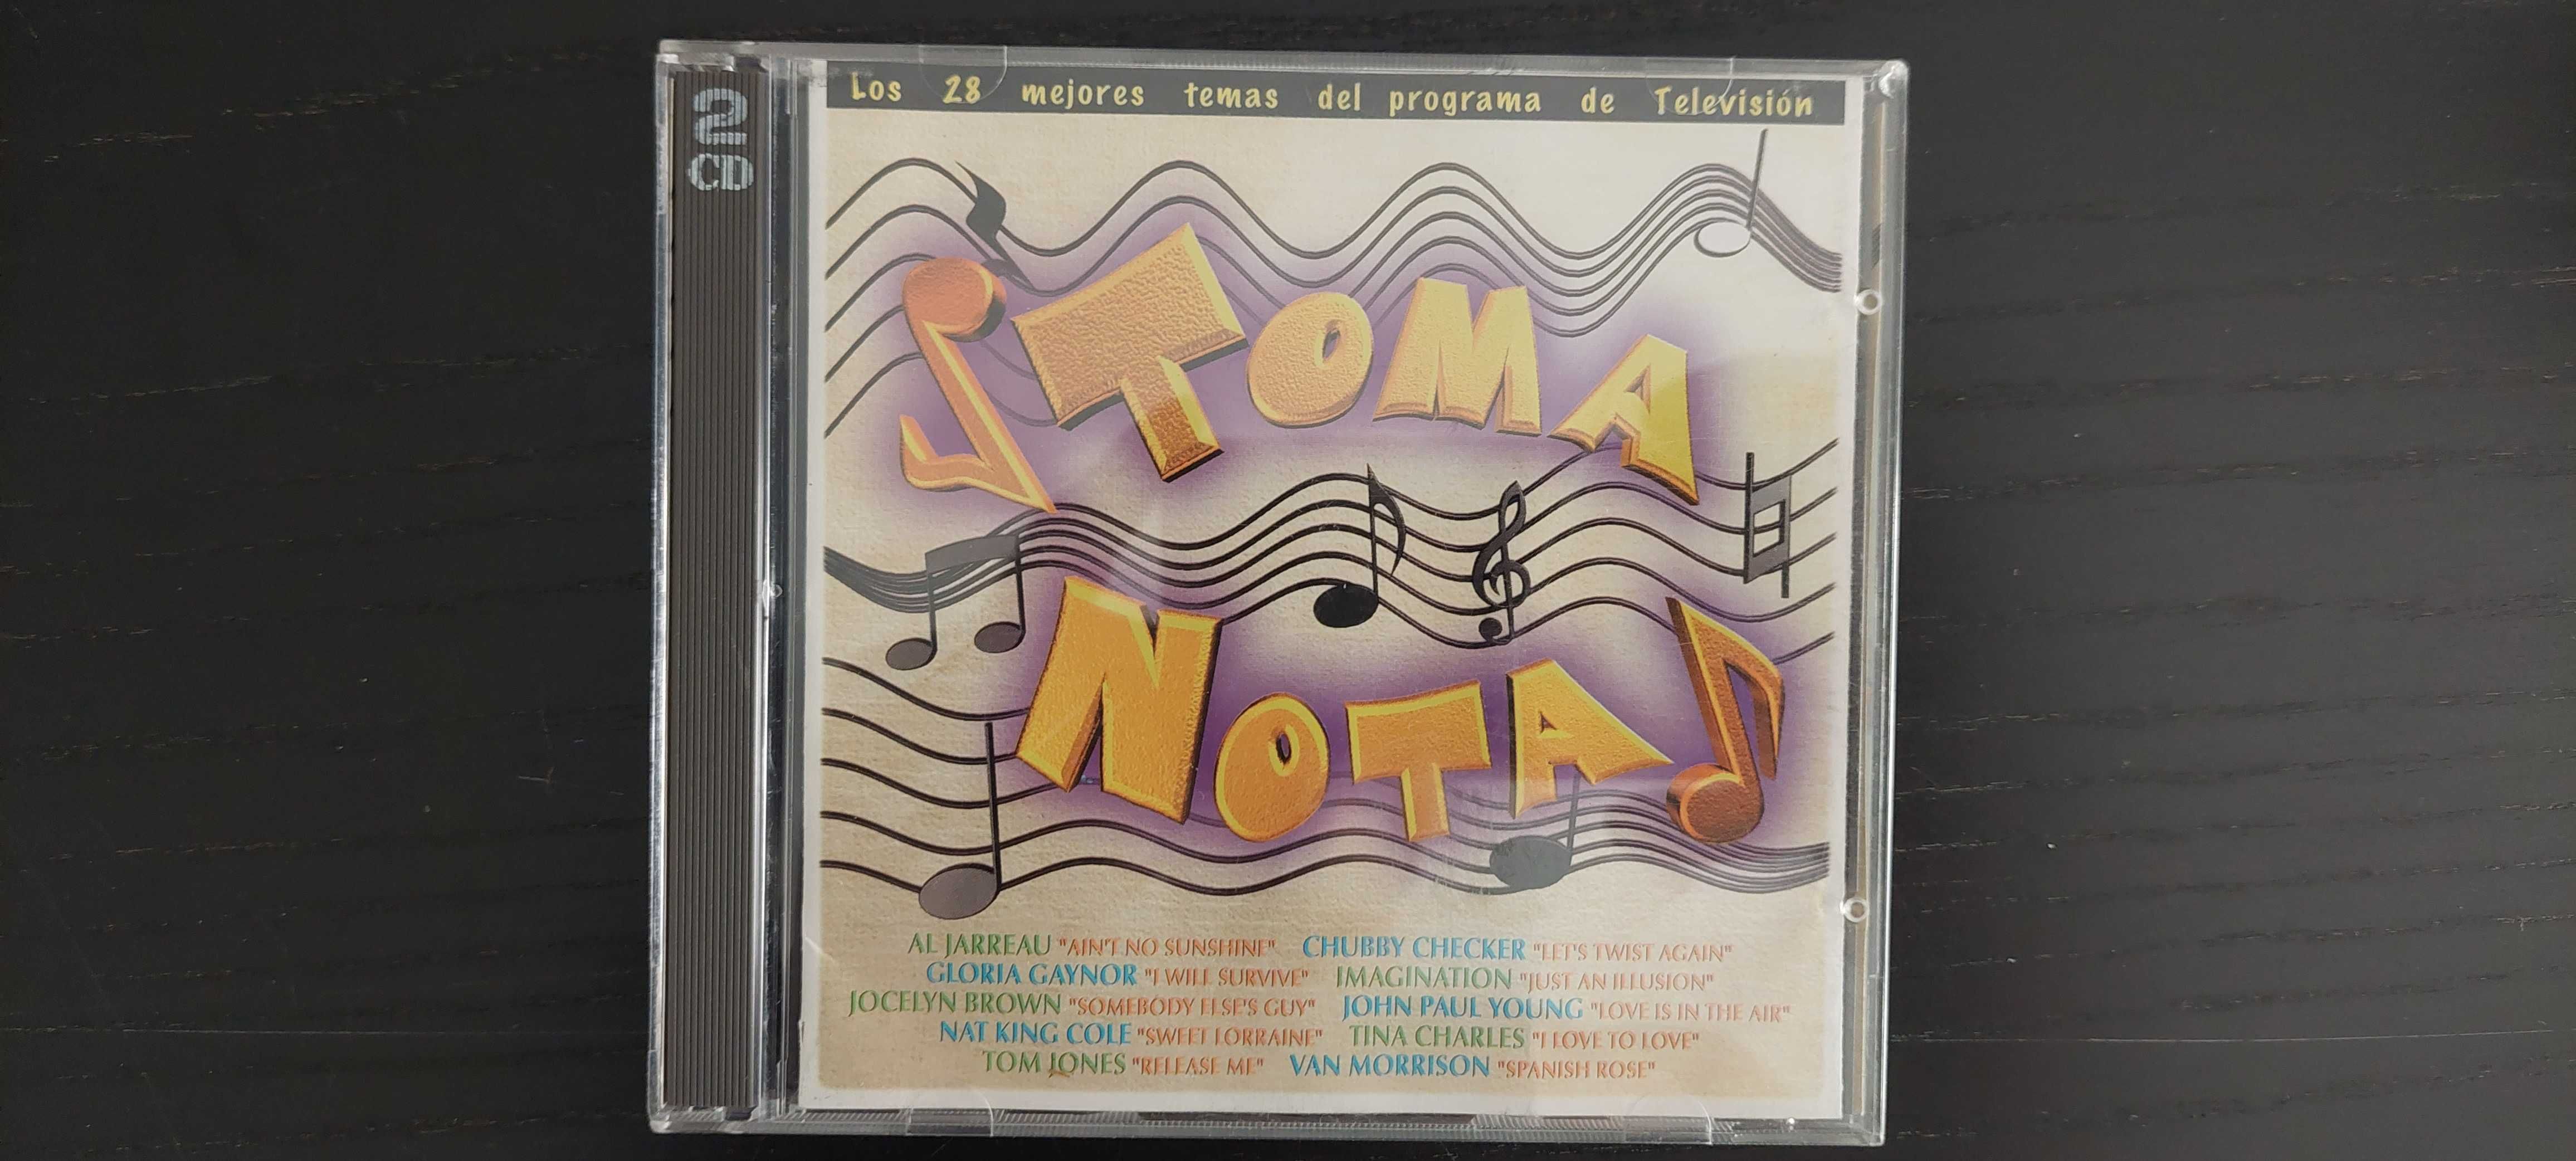 CD Original Toma Nota